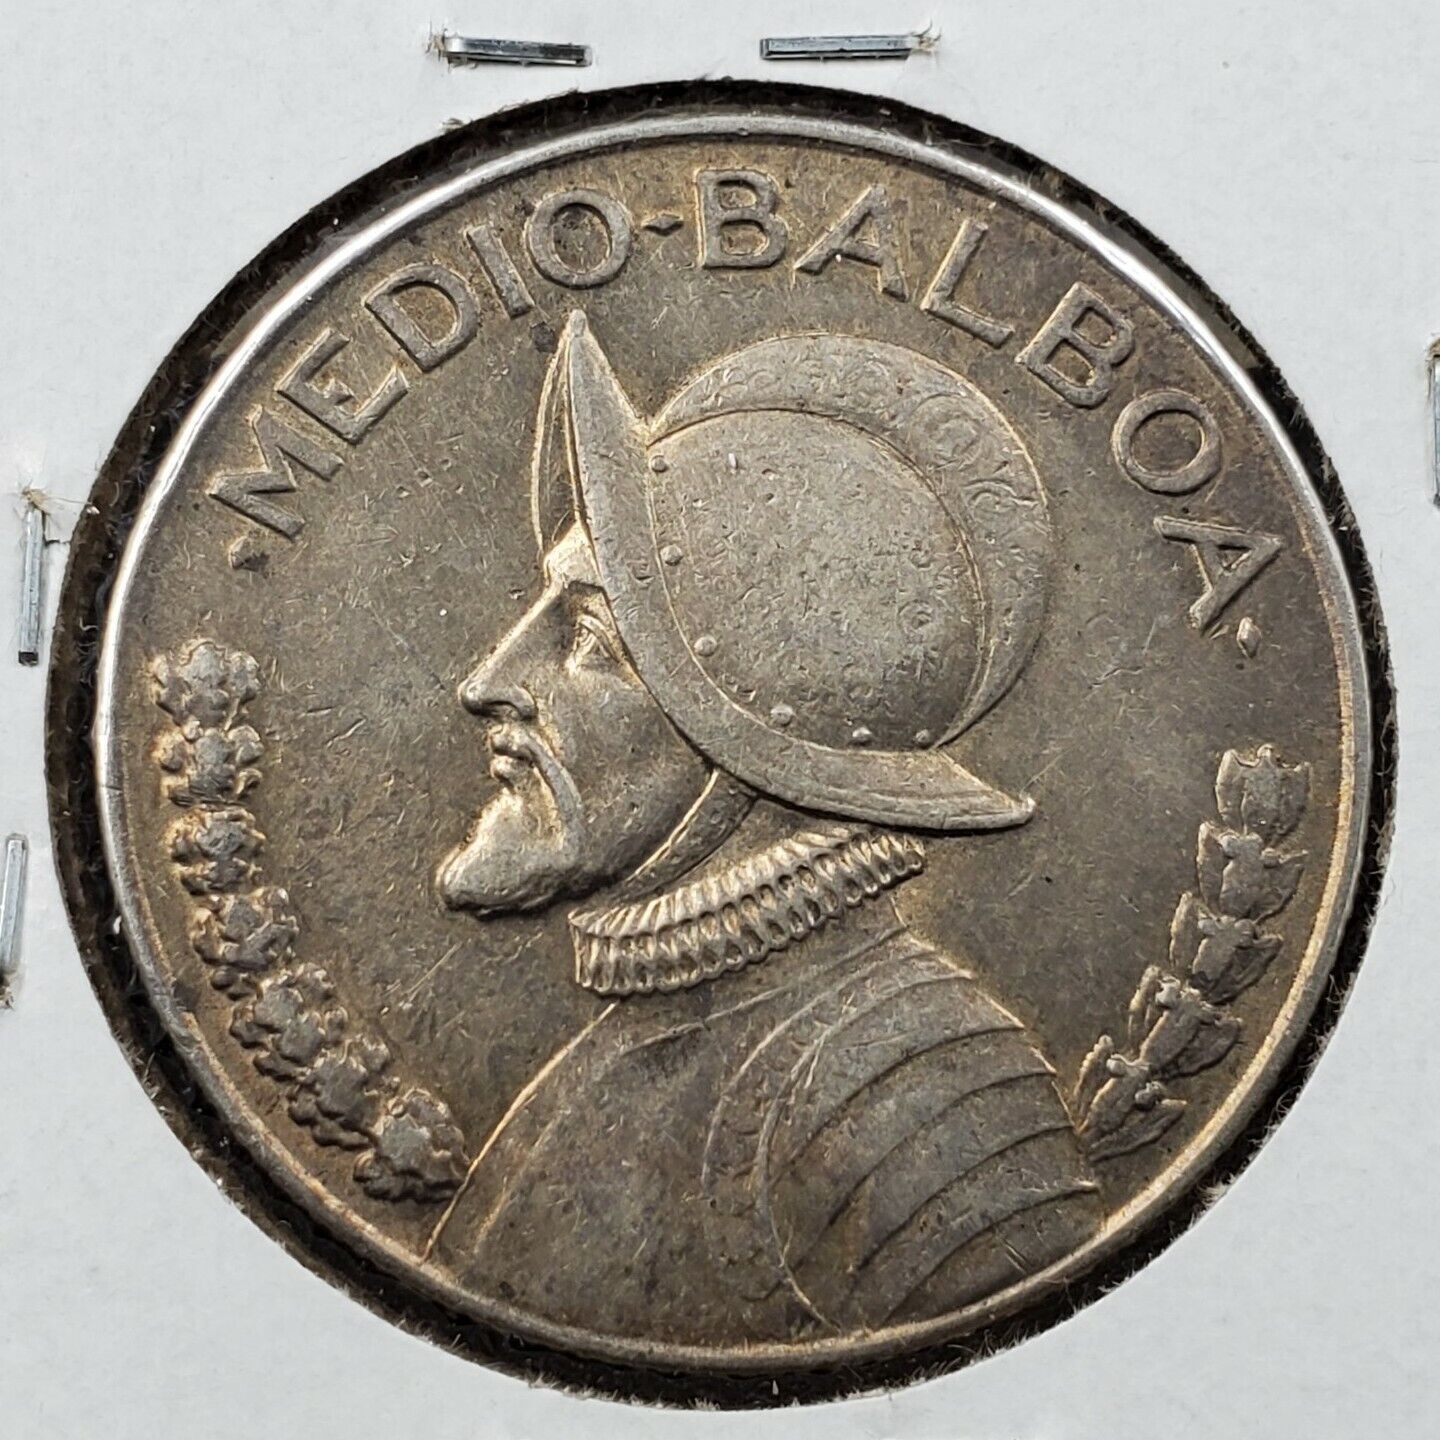 1933 Panama Silver UN MEDIO DE Quarter Balboa Coin AU Circulated Some Toning